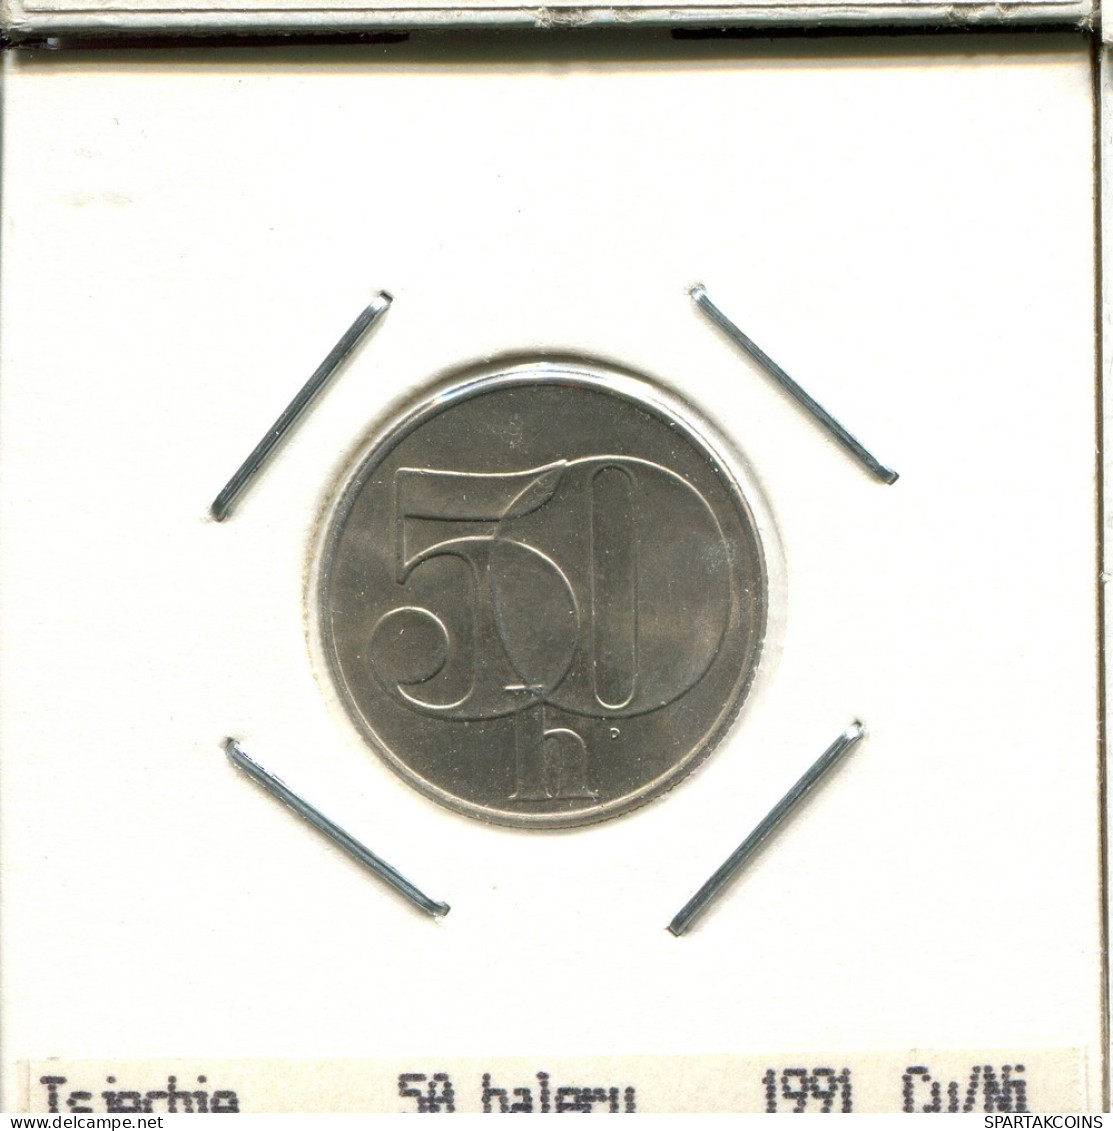 50 HALERU 1991 TSCHECHOSLOWAKEI CZECHOSLOWAKEI SLOVAKIA Münze #AS537.D.A - Tchécoslovaquie